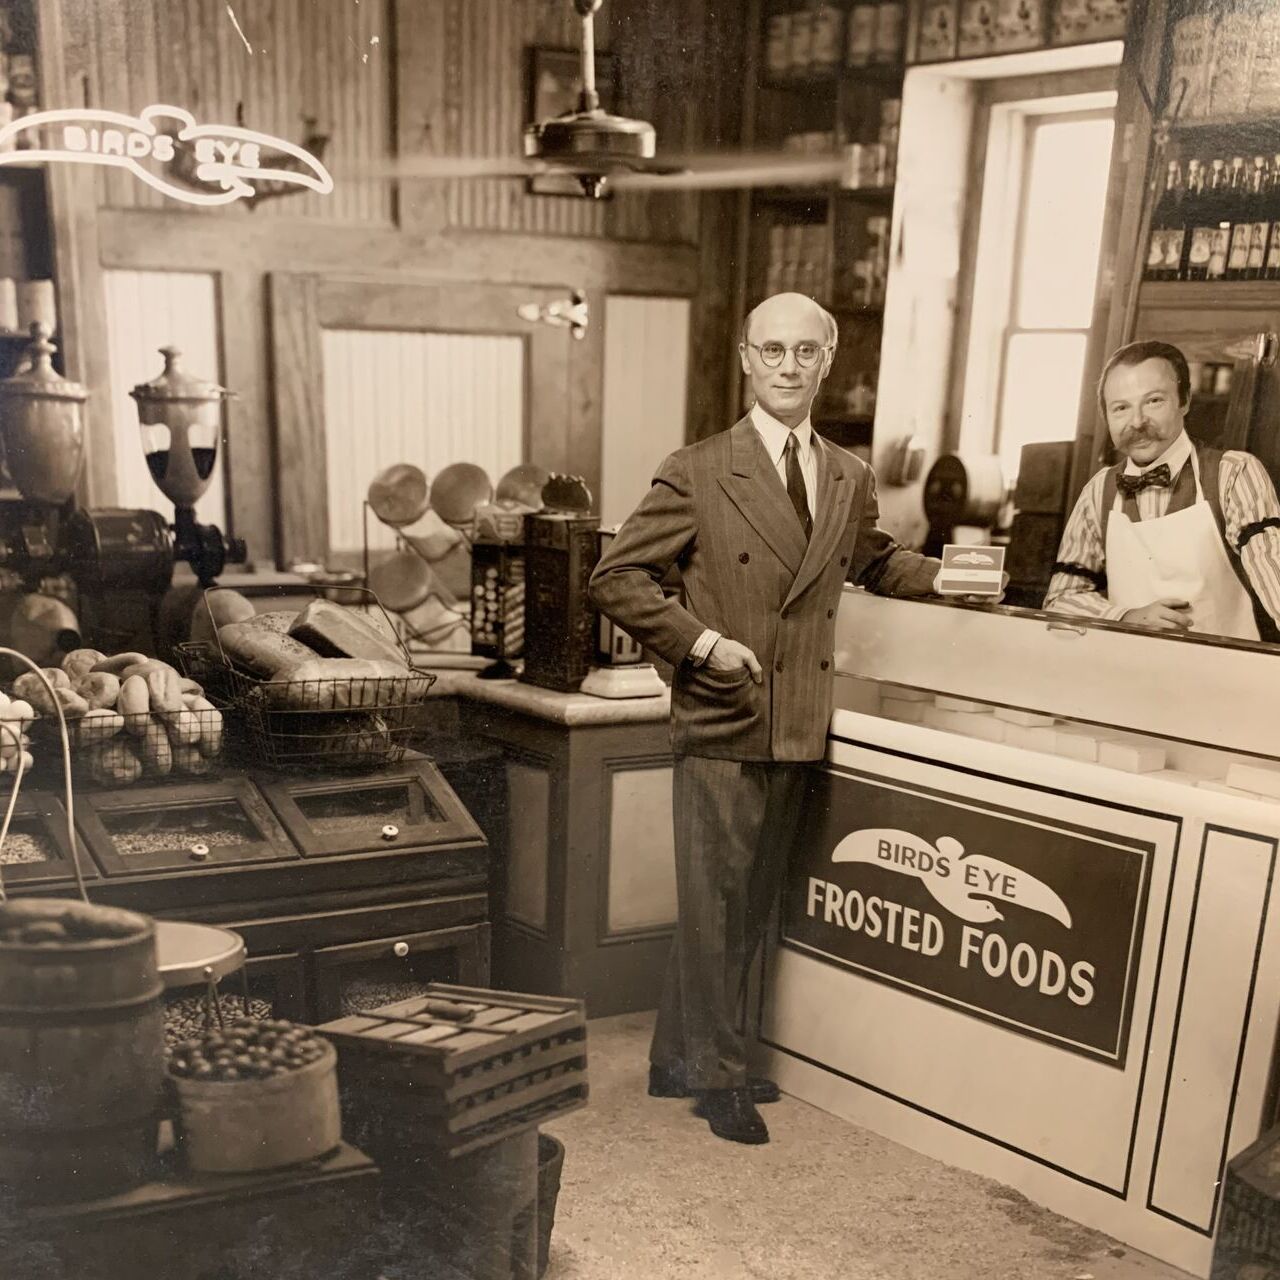 Zamrzavanje: izumitelj Clarence Birdseye u trgovini koja reklamira prodaju smrznute hrane